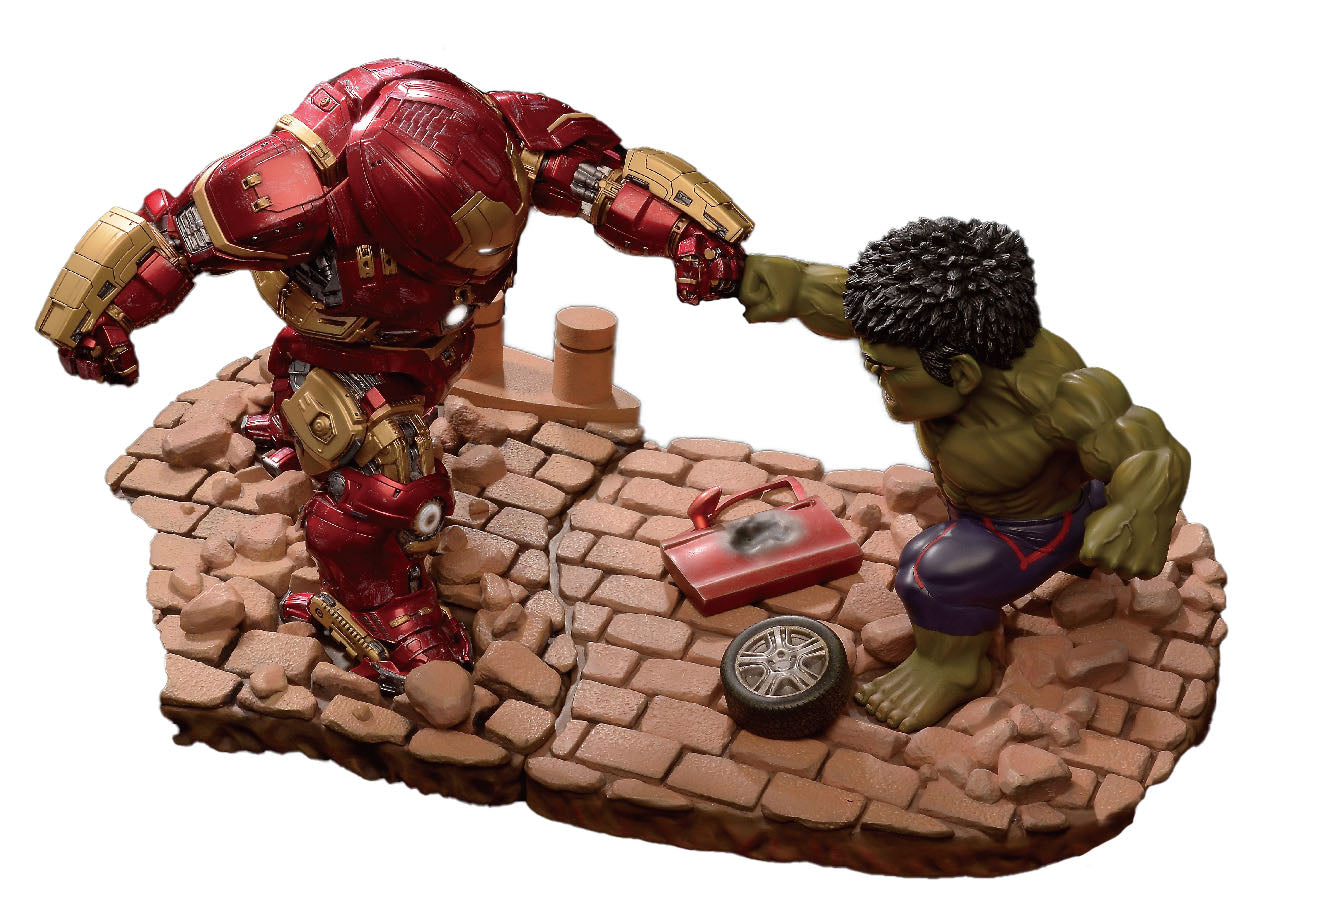 hulkbuster armor vs hulk avengers 2